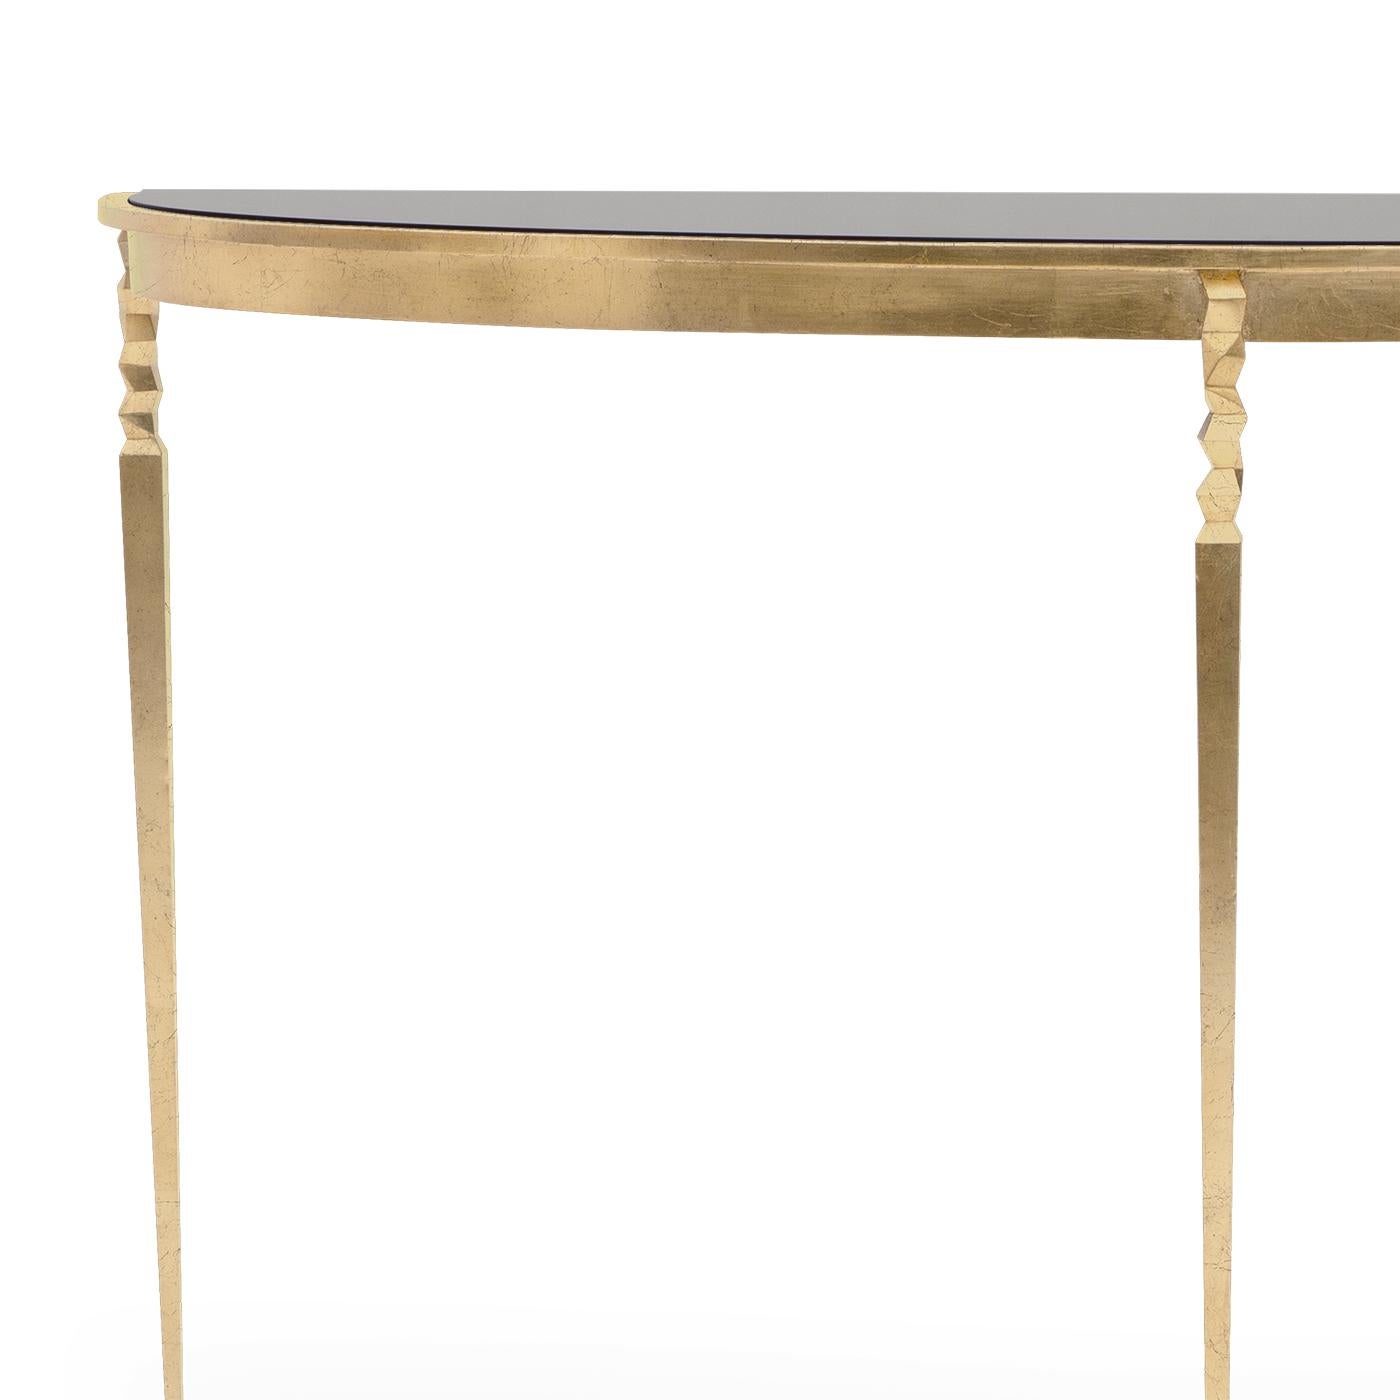 Table console finesse avec plateau en verre noir massif.
Sur base de fer forgé en finition dorée style oro.
La base est également disponible dans d'autres finitions sur demande.